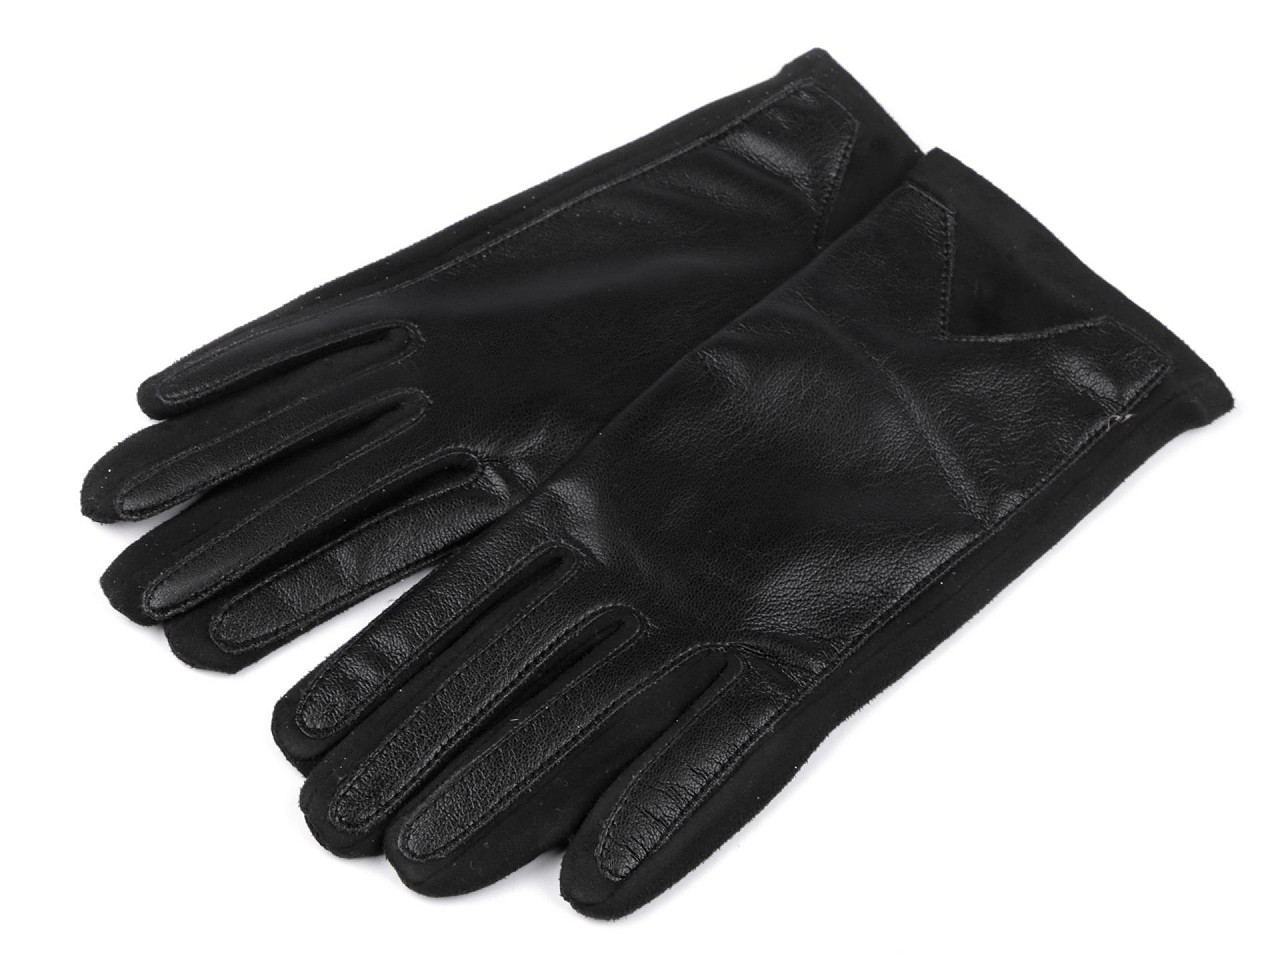 Mănuși pentru femei din piele ecologică, cu funcție tactilă, negre, 1 pereche